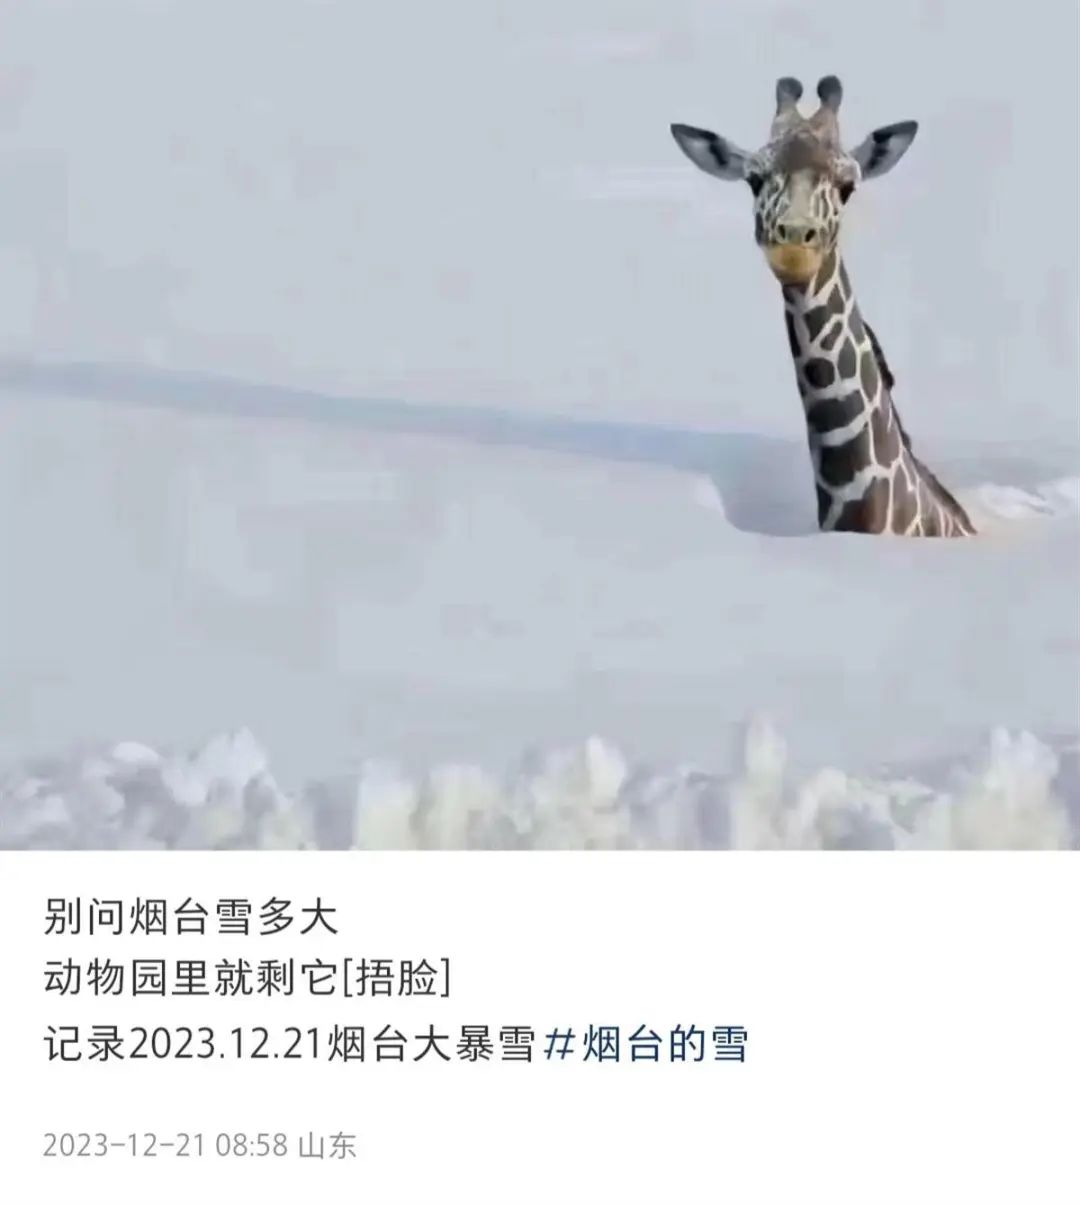 动物长颈鹿图片简笔画_动物总动员长颈鹿图_连降暴雪动物园只剩长颈鹿露头?